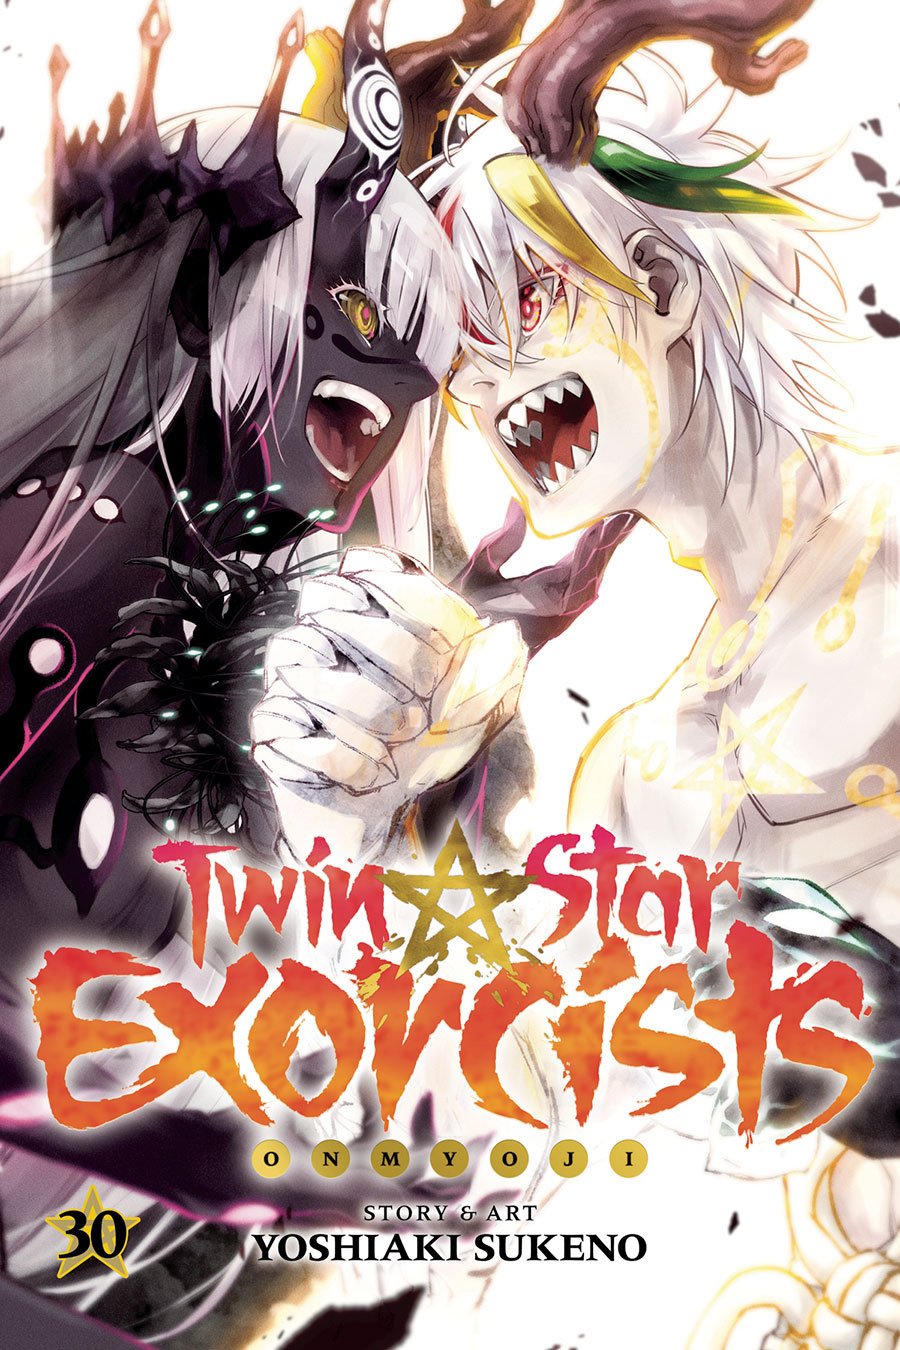 Twin Star Exorcists Onmyoji Vol 30 TP